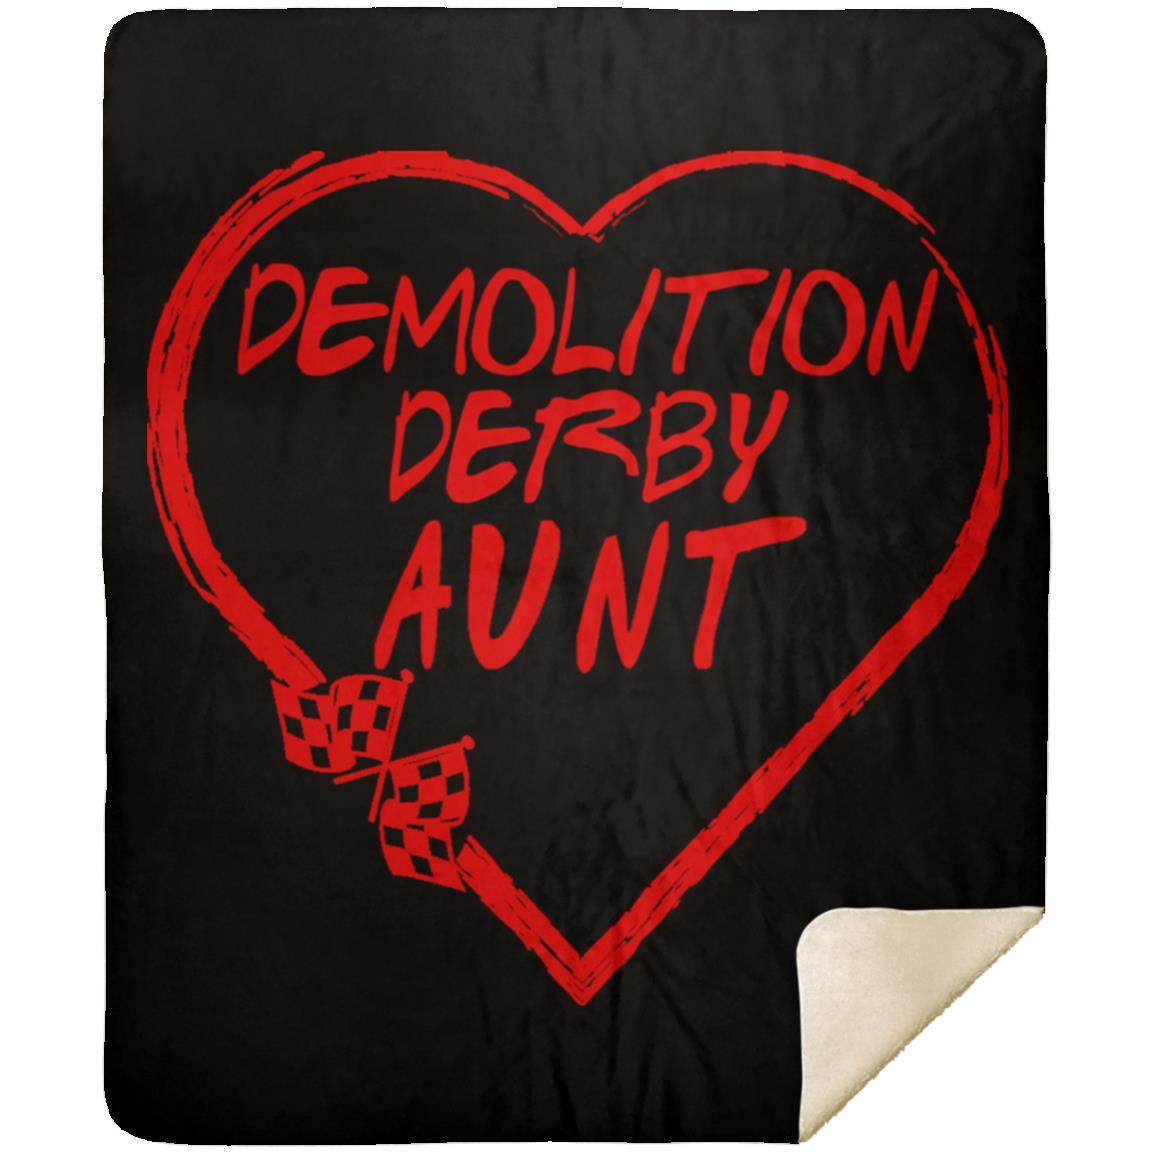 Demolition Derby Aunt Heart Premium Mink Sherpa Blanket 50x60